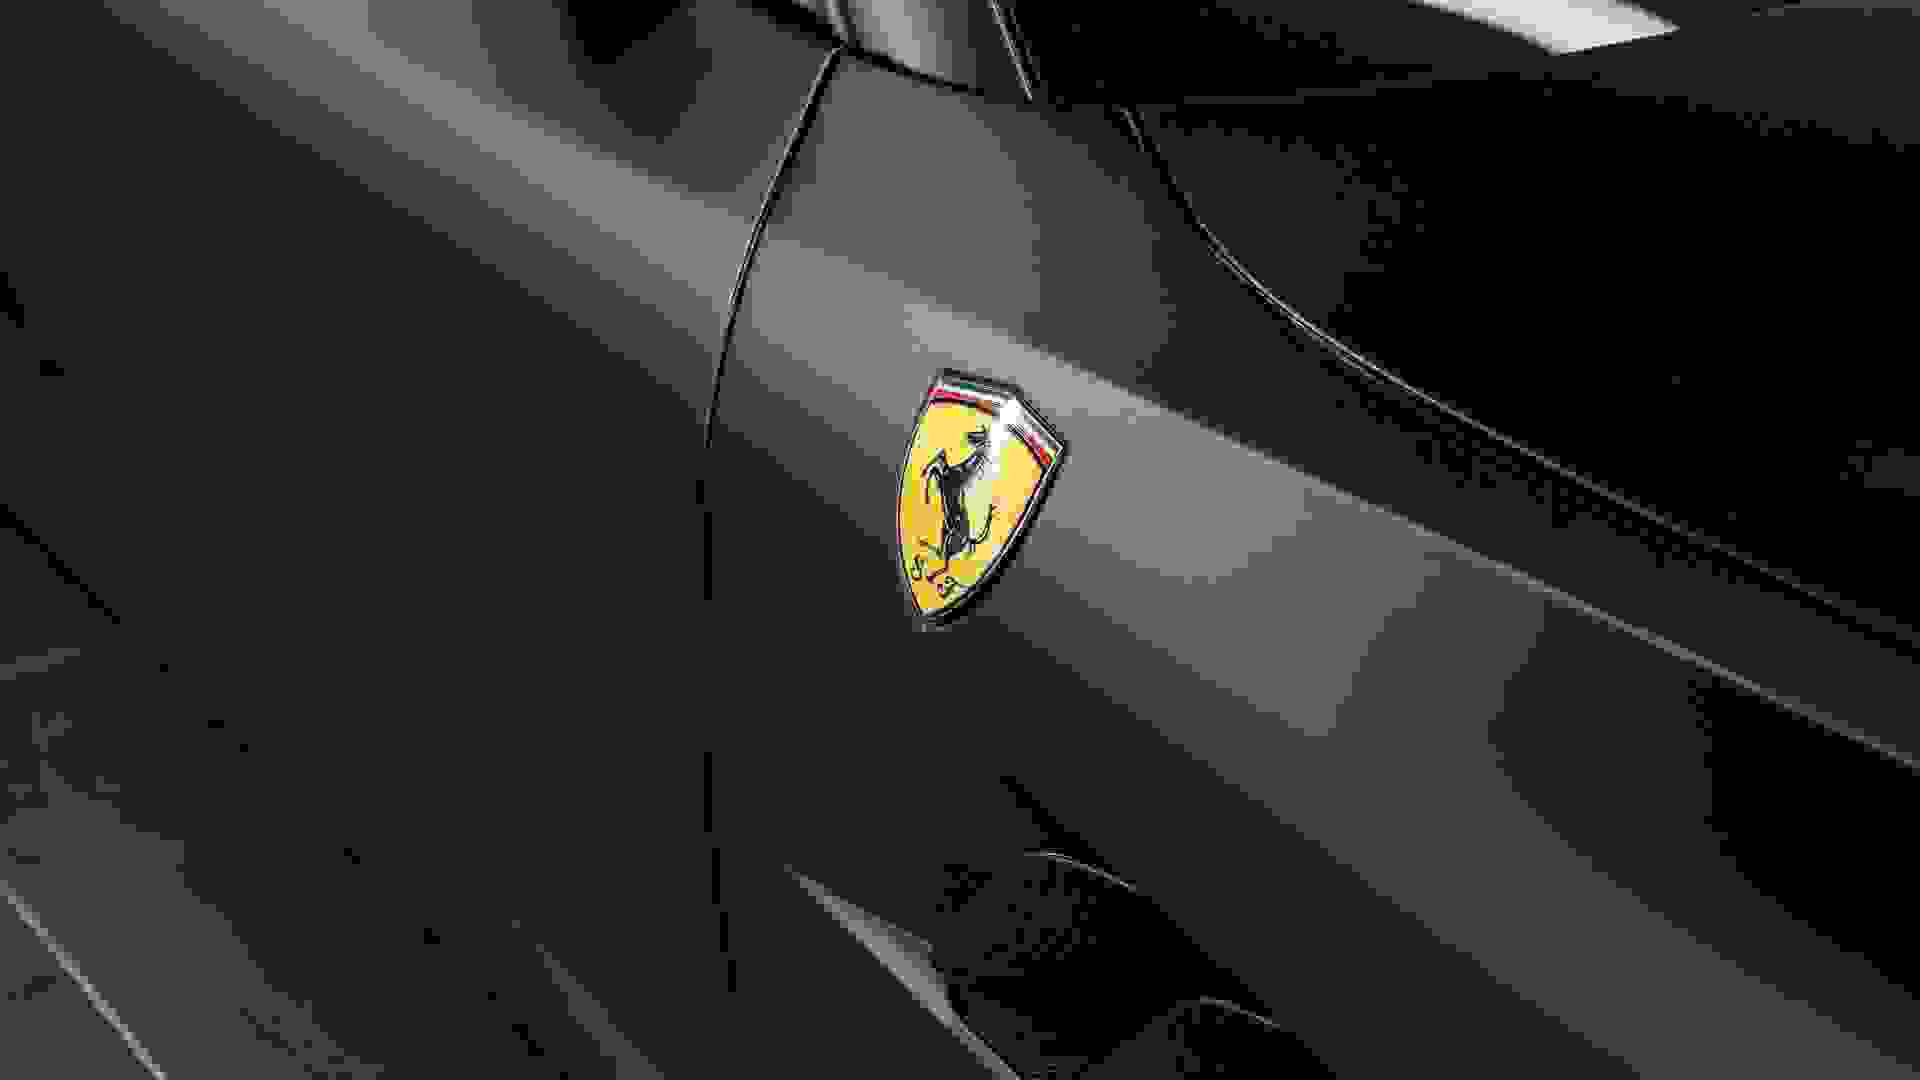 Ferrari GTC4 Lusso Photo 1ac58f90-18ea-4106-ba7a-1b5637c2f775.jpg